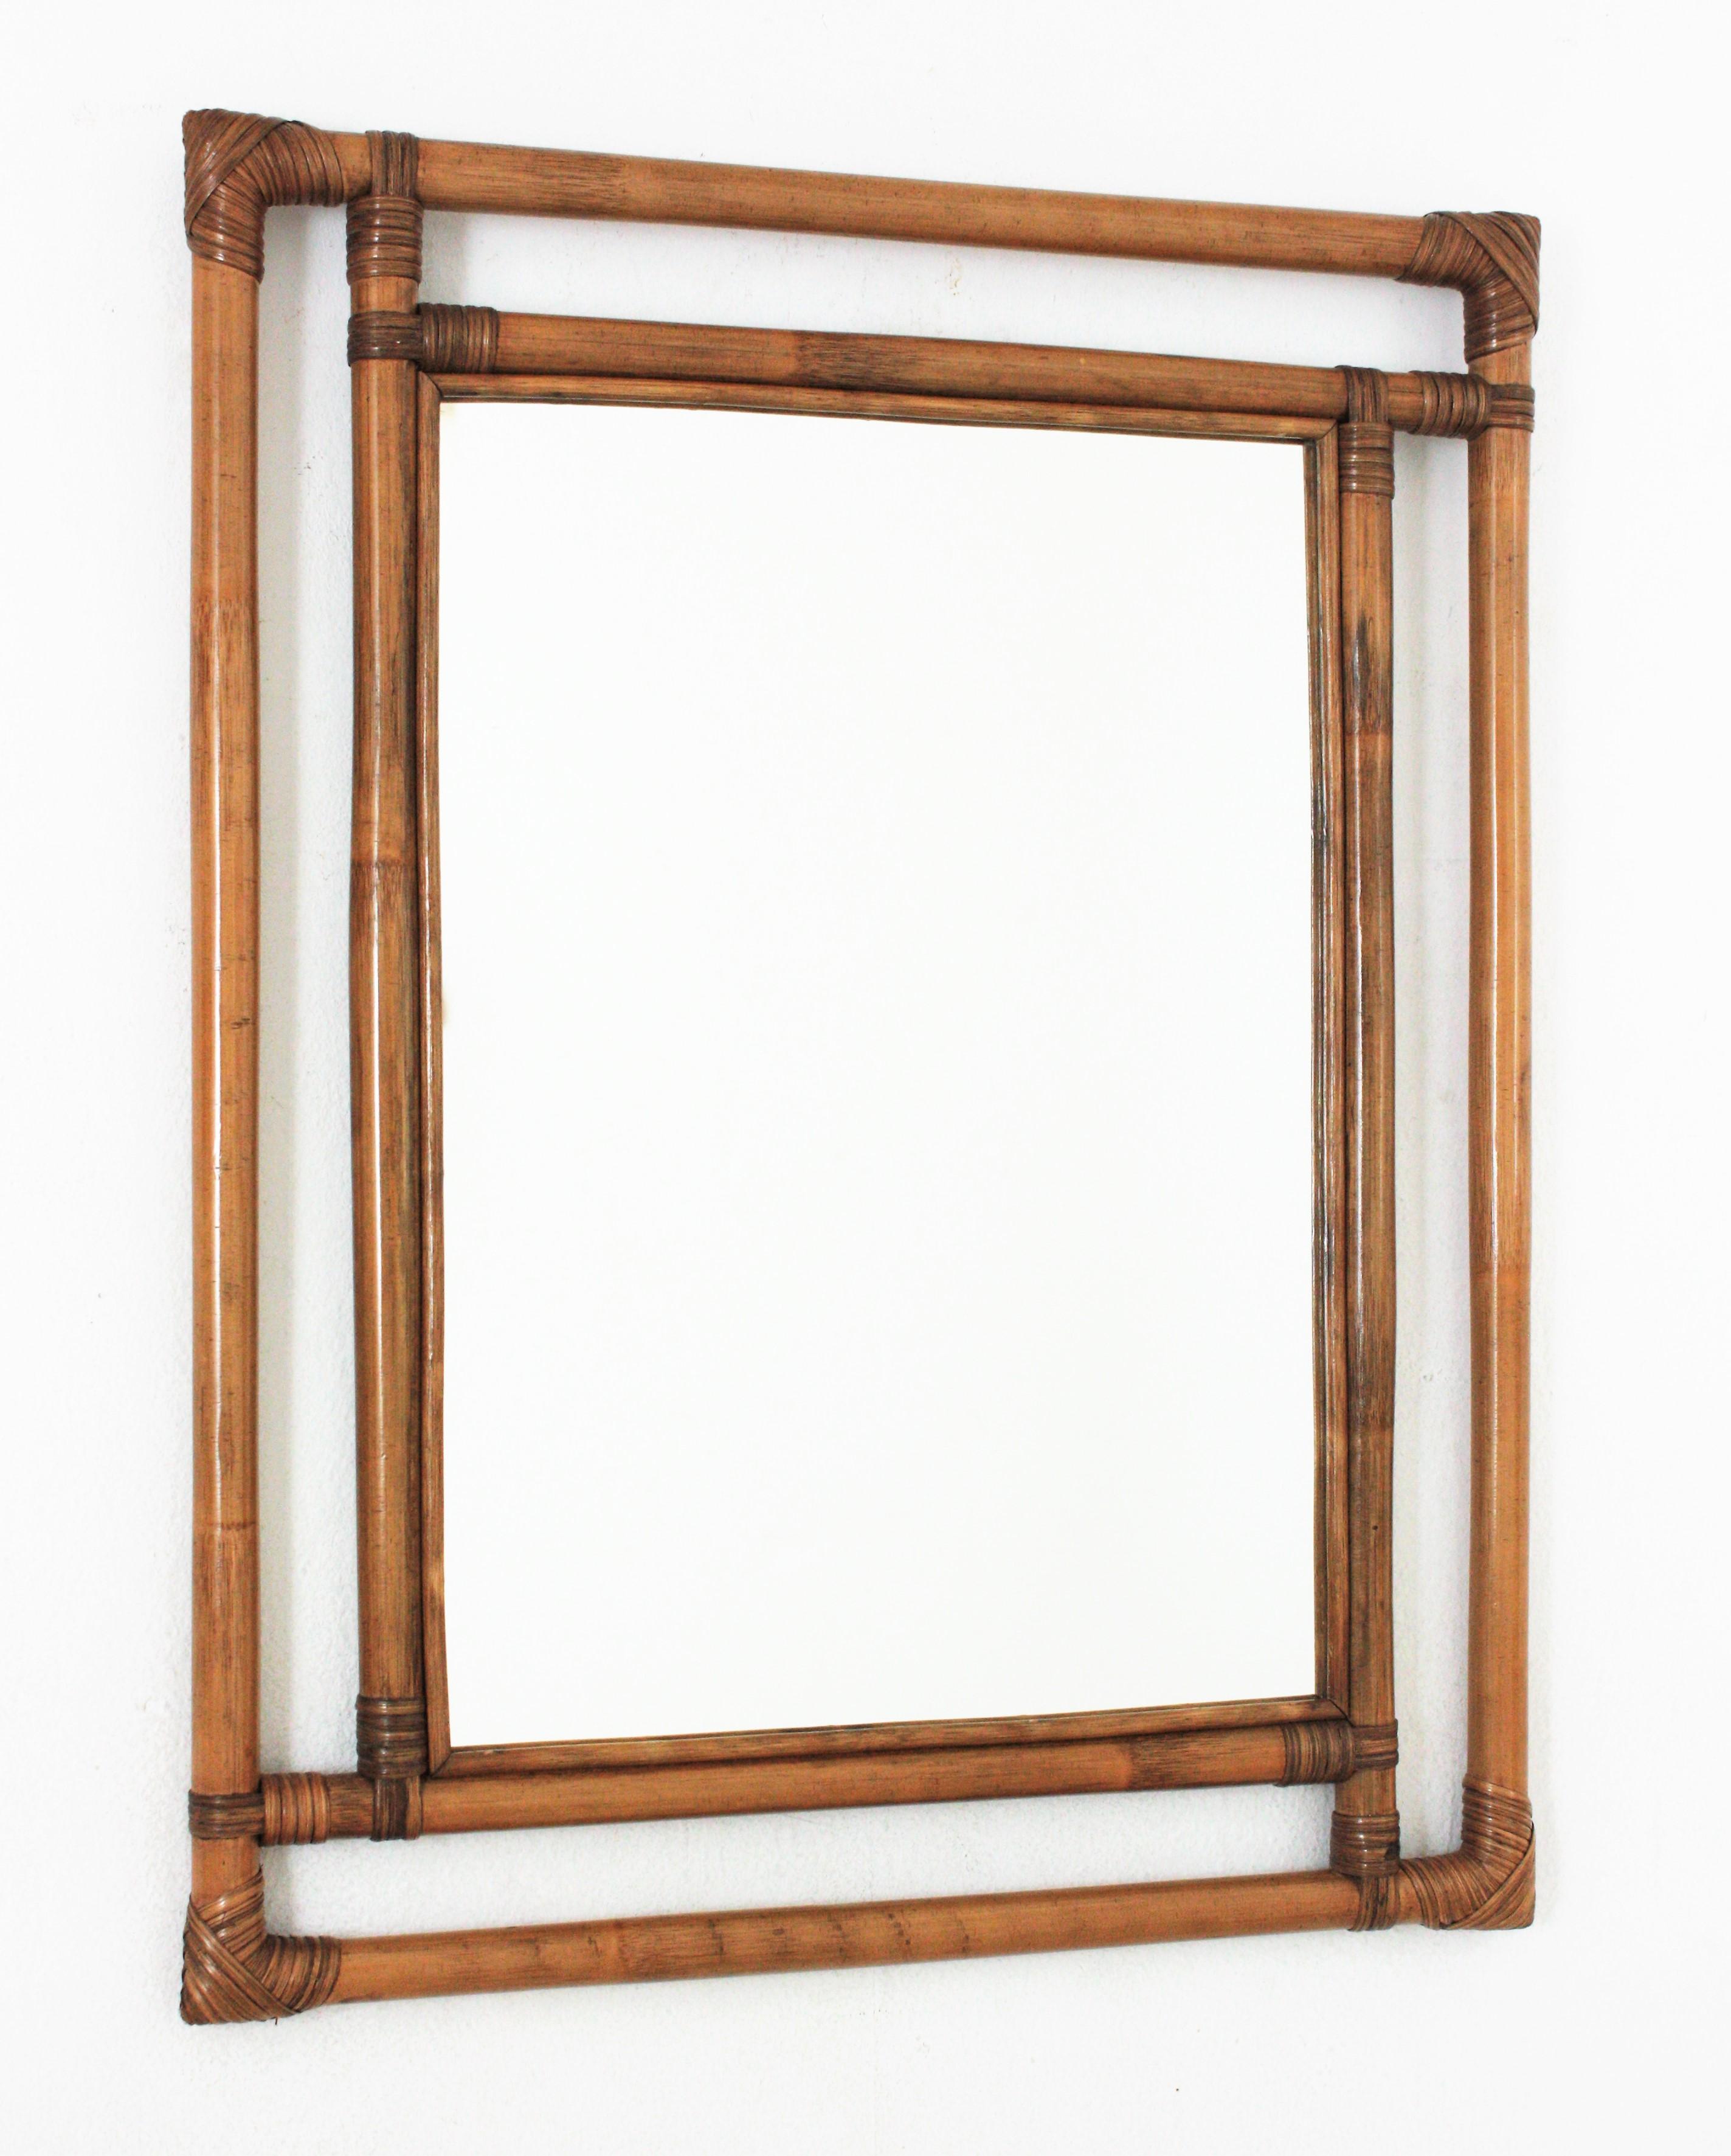 Wunderschöner rechteckiger Spiegel im Tiki-Stil, handgefertigt aus Bambusrohren. Spanien, 1960er Jahre.
Äußerst dekorativer, handgefertigter Bambusrahmen mit geometrischen Formen, orientalischen Akzenten und einer großen Glasfläche,
Dieser Spiegel